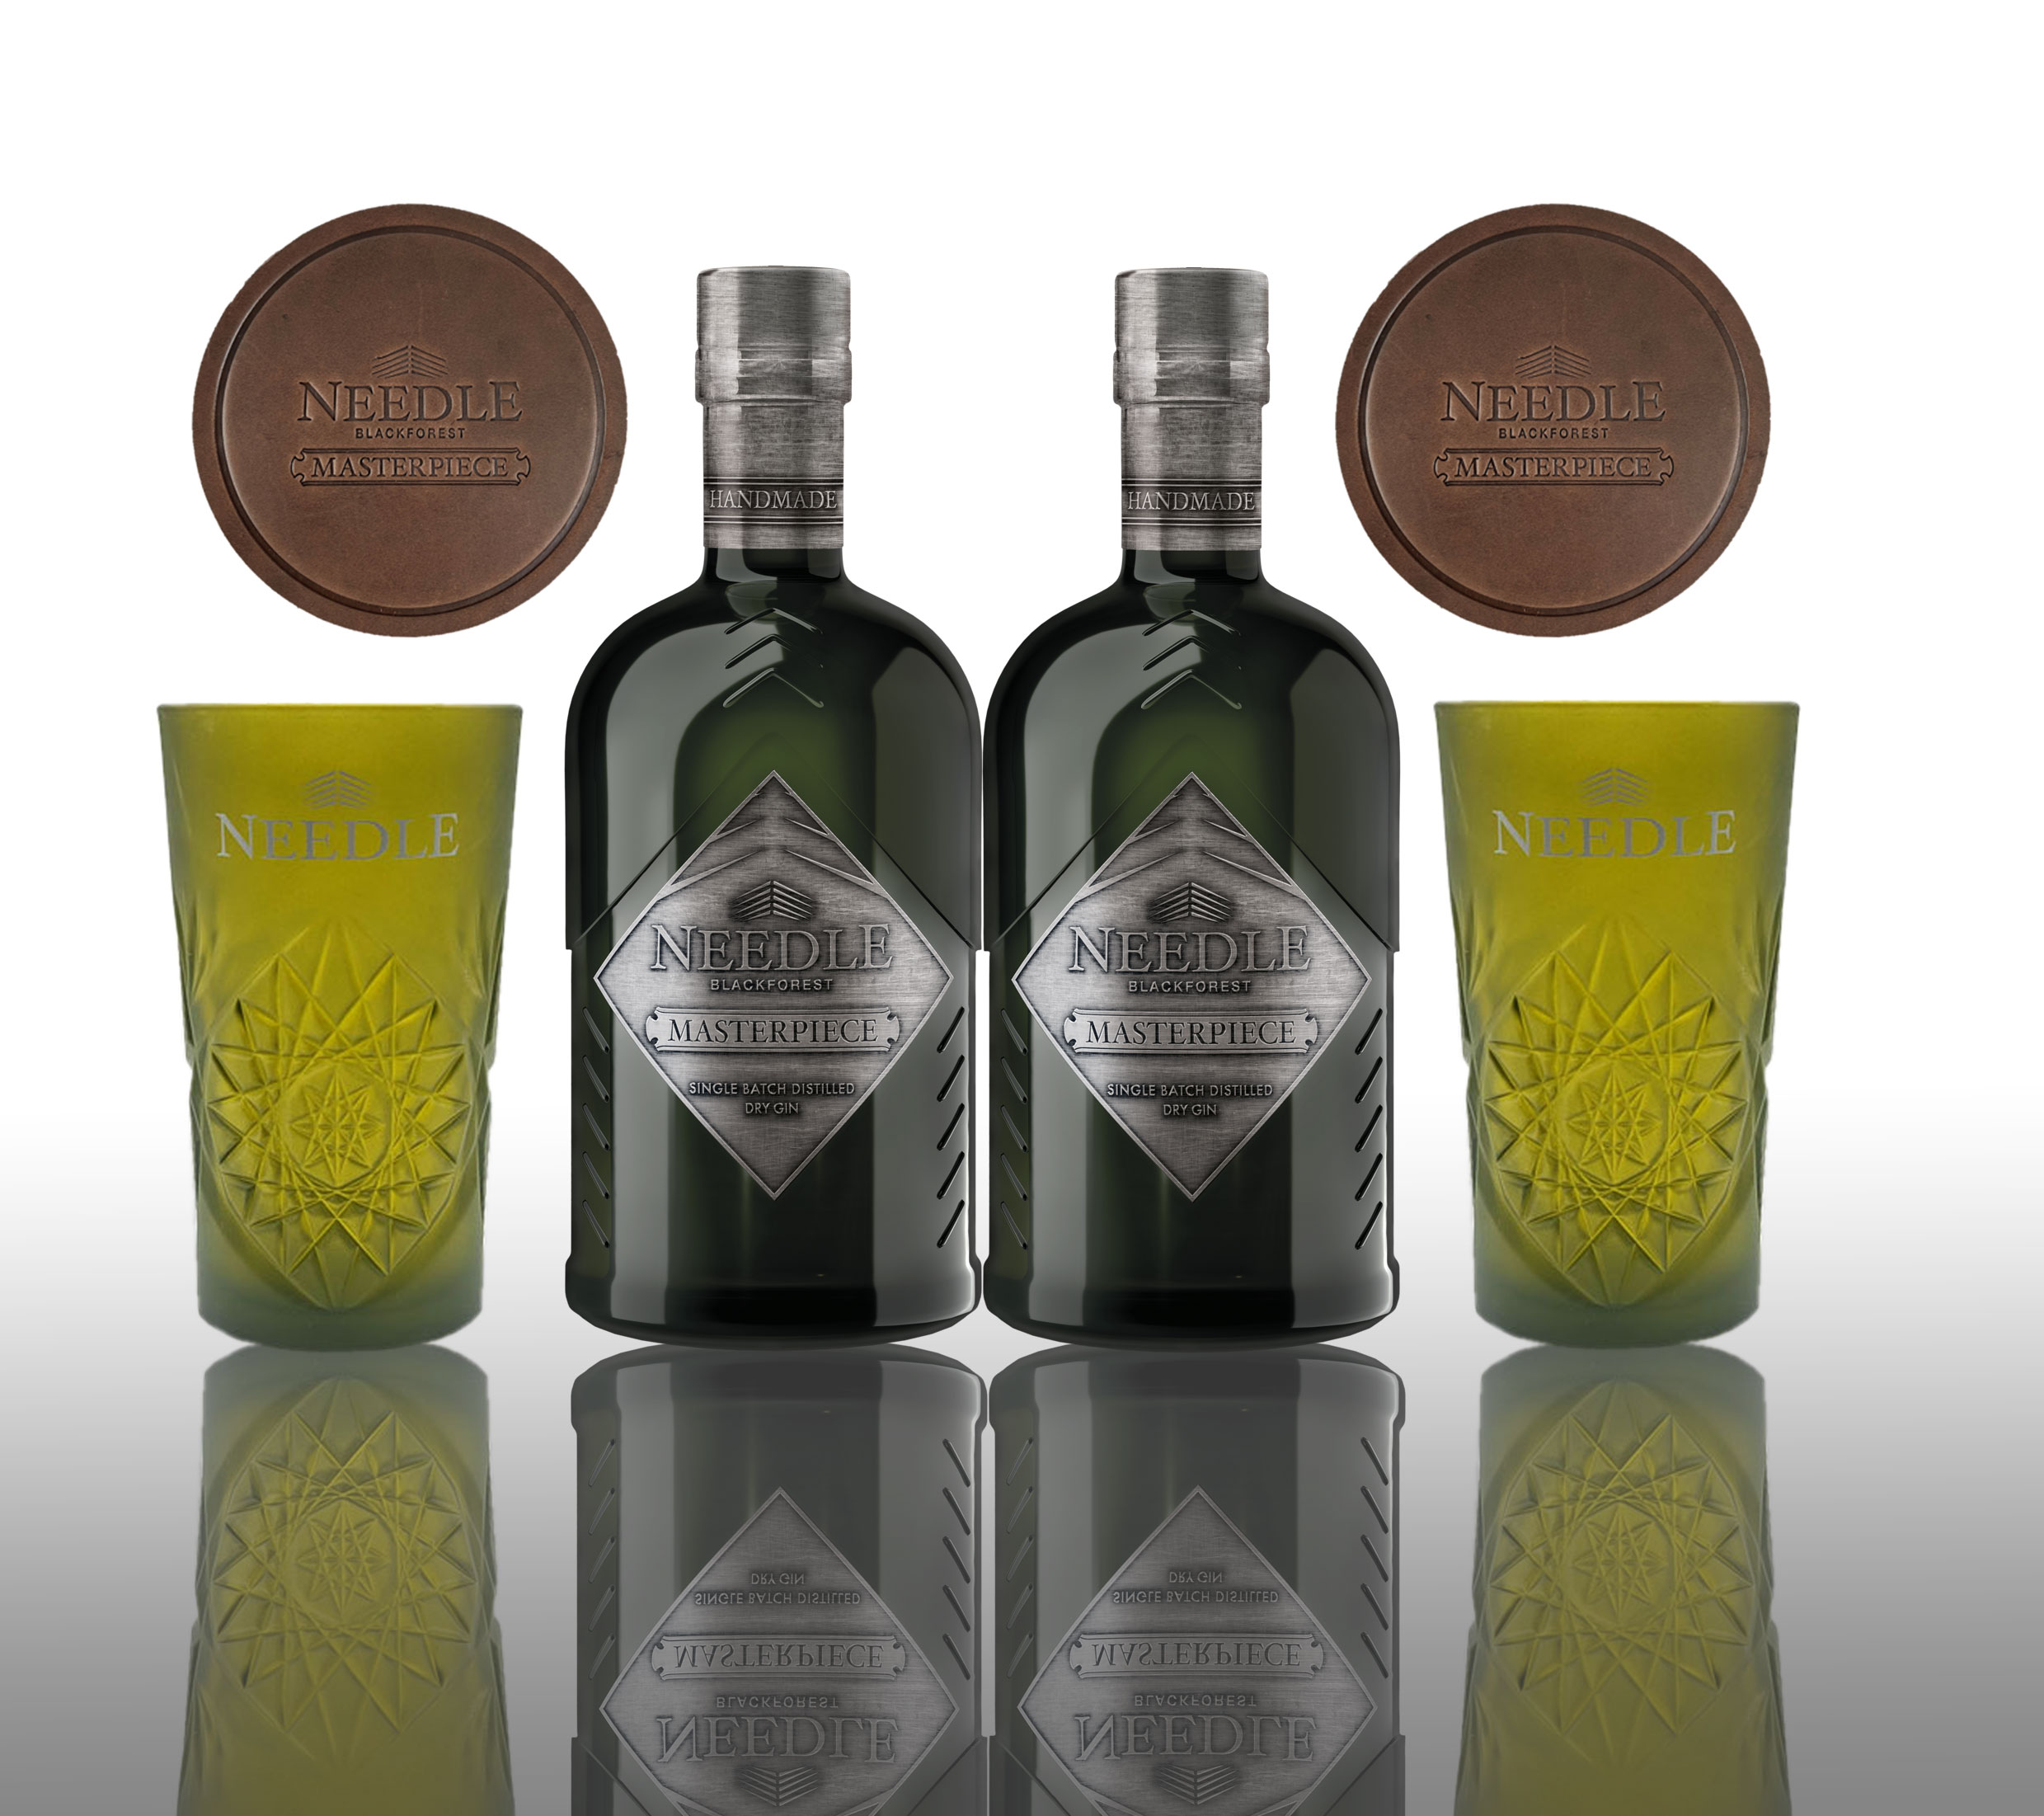 Needle Masterpiece Set - 2x Blackforest Gin 0,5L (45% Vol) + 2x grüne mattierte Longdrink Gläser und 2 handgegerbte Leder Untersetzer Gratis - [Enthält Sulfite]